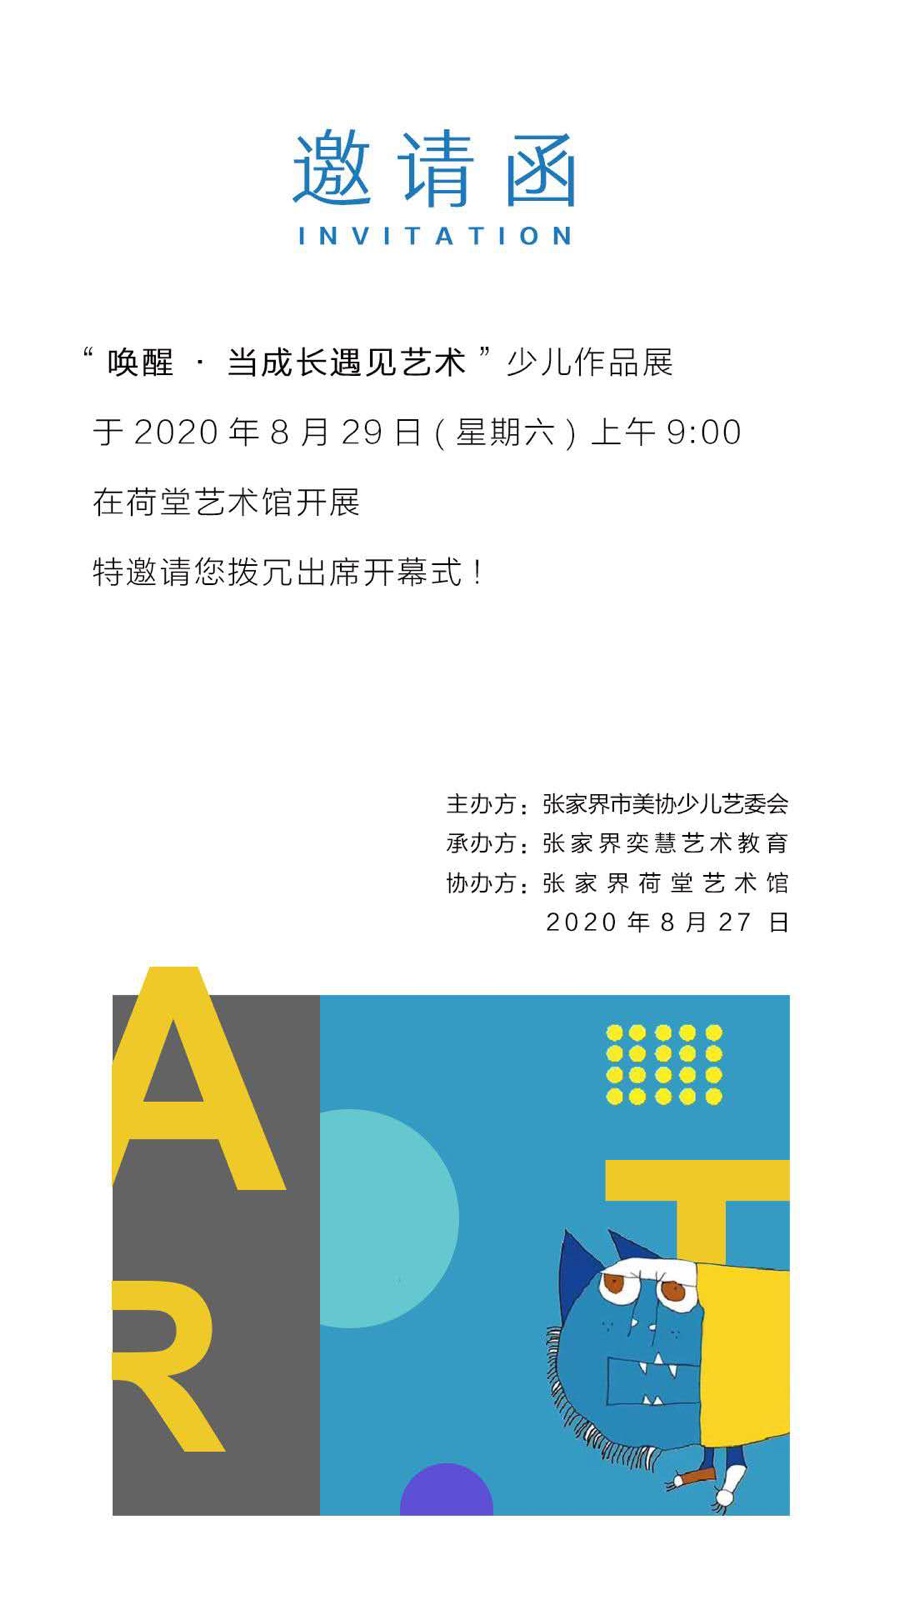 【荷堂展览】“唤醒·当成长遇见艺术”少儿作品展在香港35图库开幕